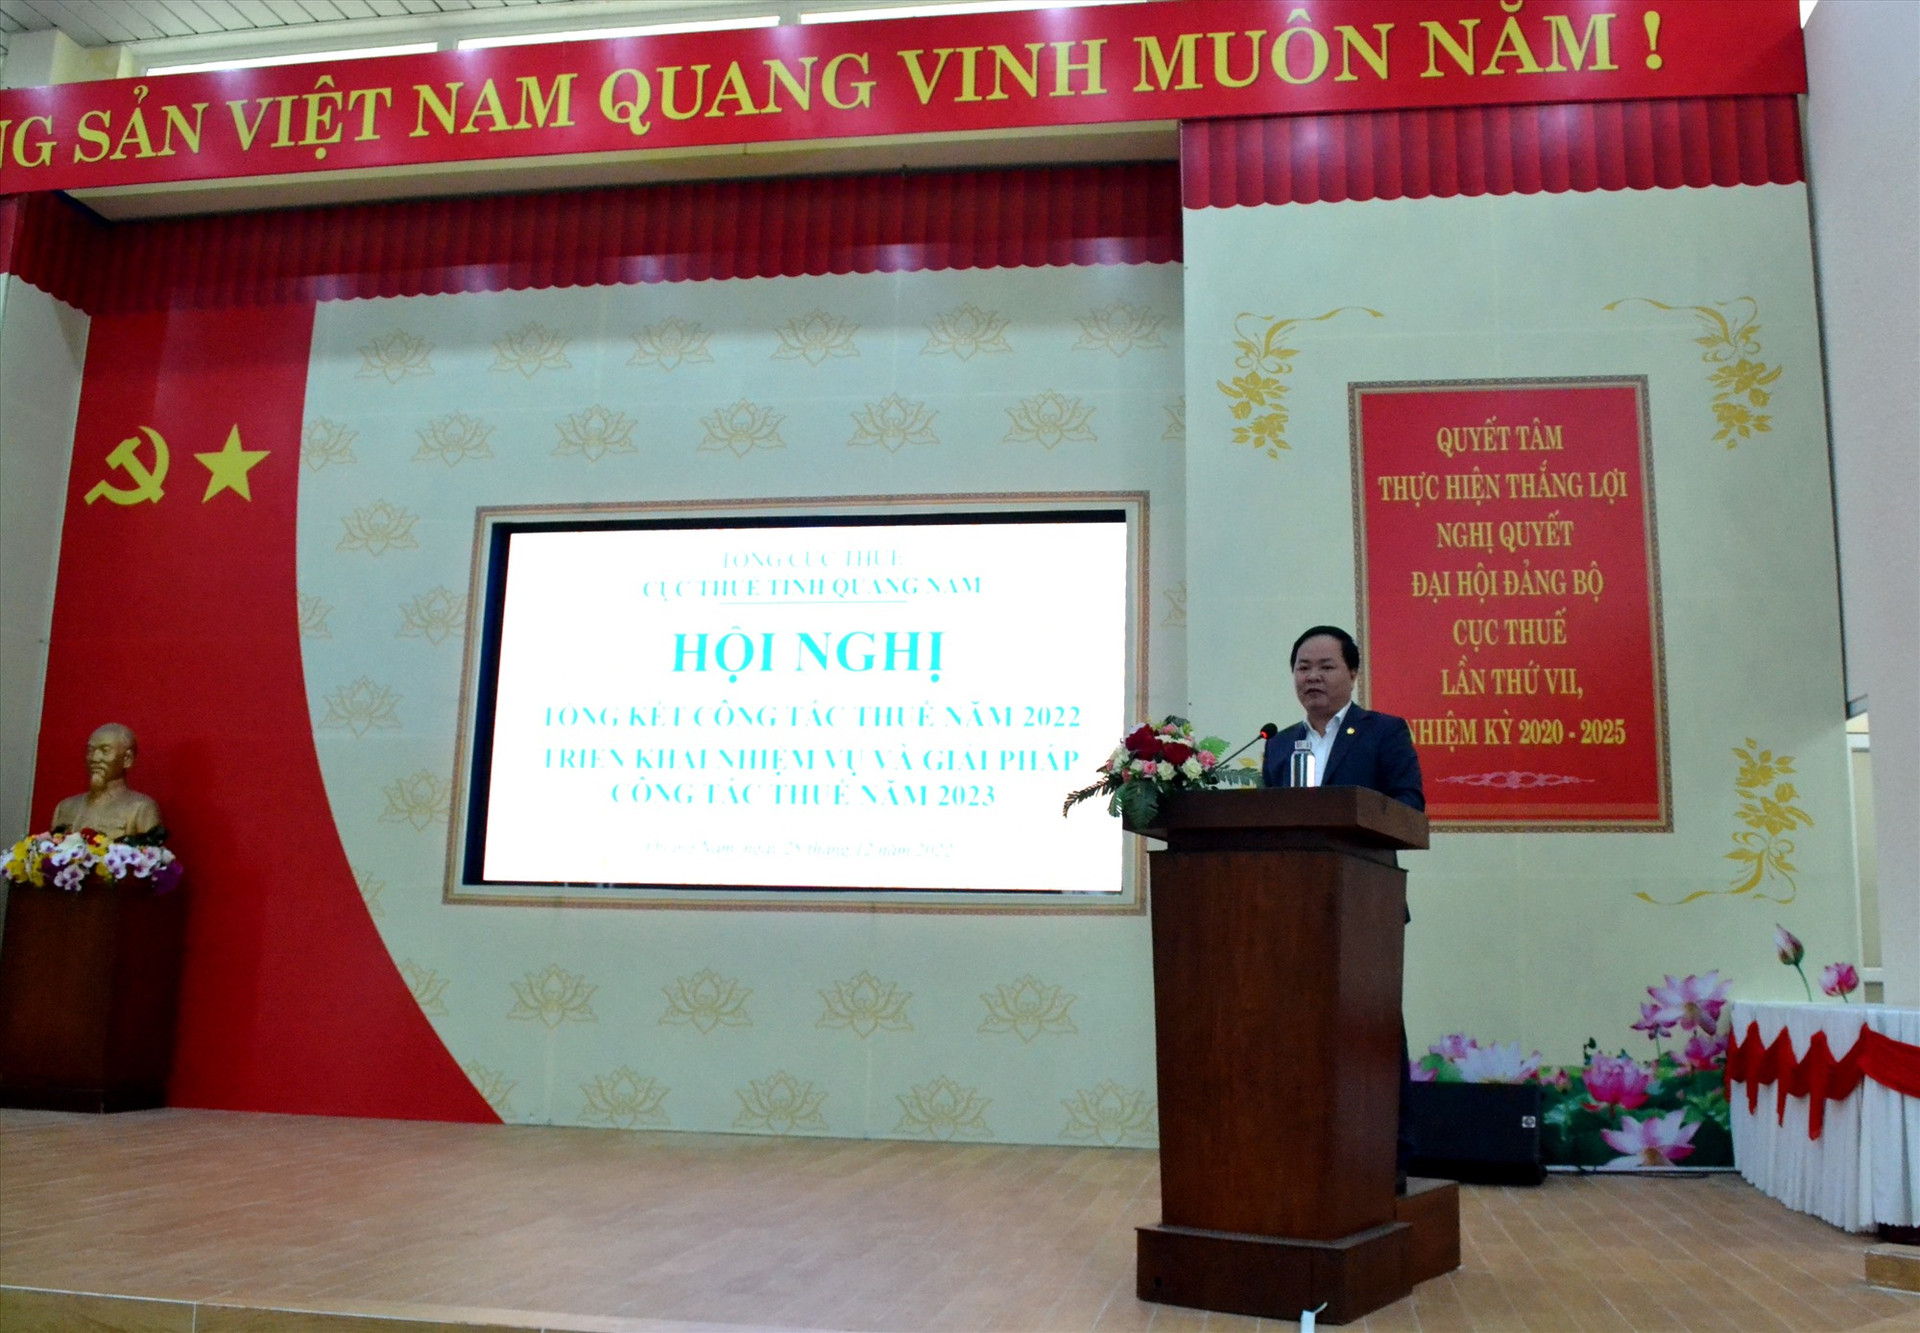 Phó Chủ tịch UBND tỉnh Nguyễn Hồng Quang phát biểu chỉ đạo hội nghị tổng kết thực hiện nhiệm vụ thuế năm 2022, triển khai các nhiệm vụ, giải pháp công tác thuế năm 2023. Ảnh: Q.VIỆT